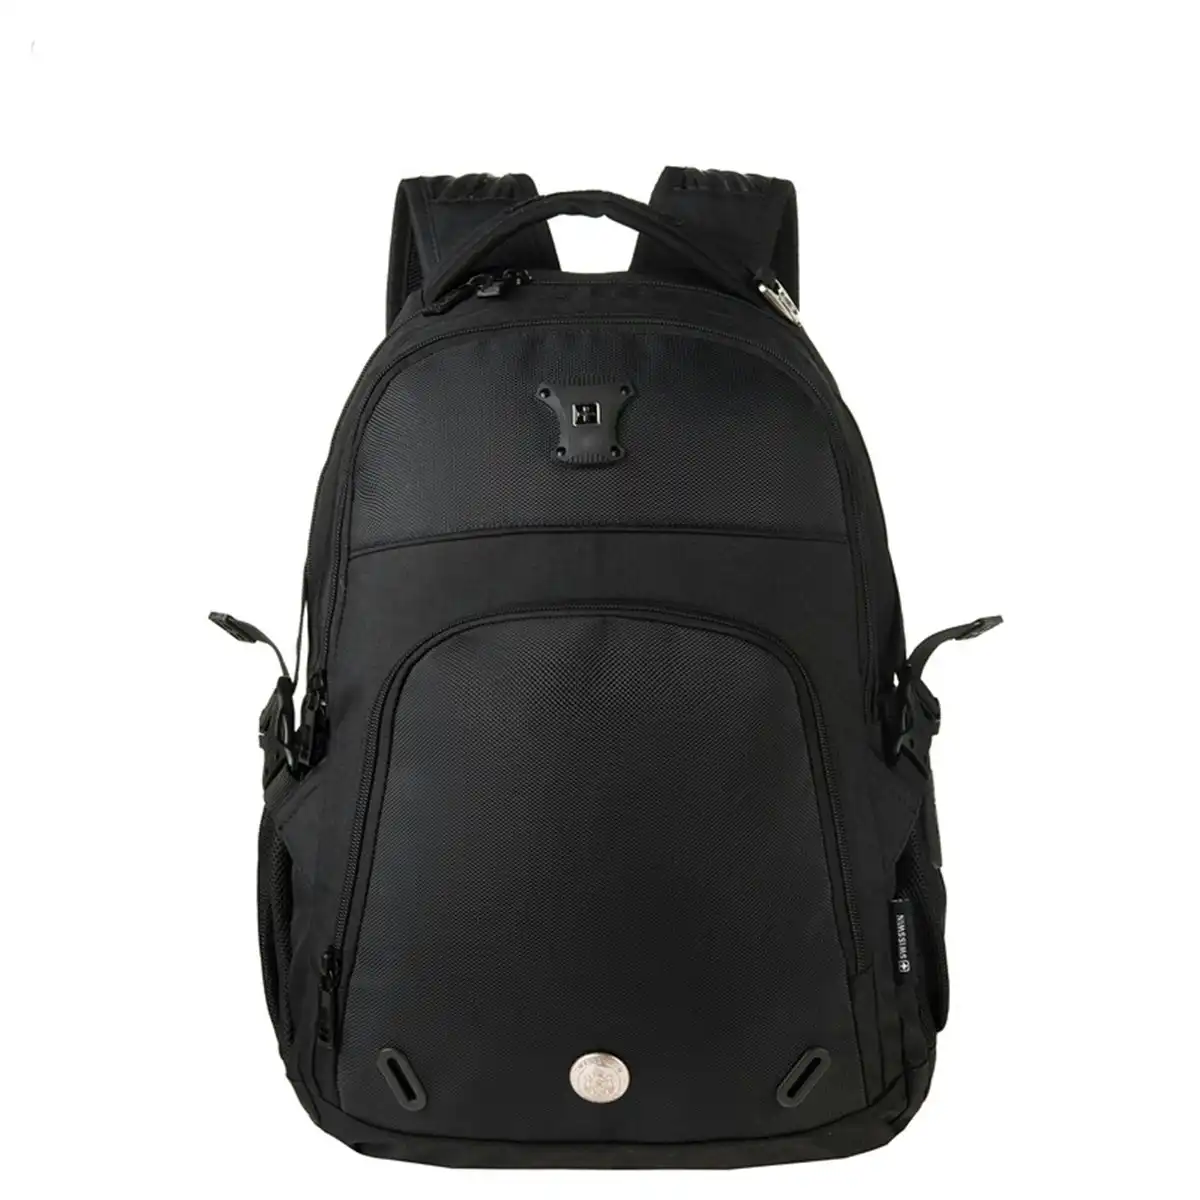 Swisswin Swiss waterproof 15.6" laptop Backpack School backpack Travel Backpack SW9017-Black